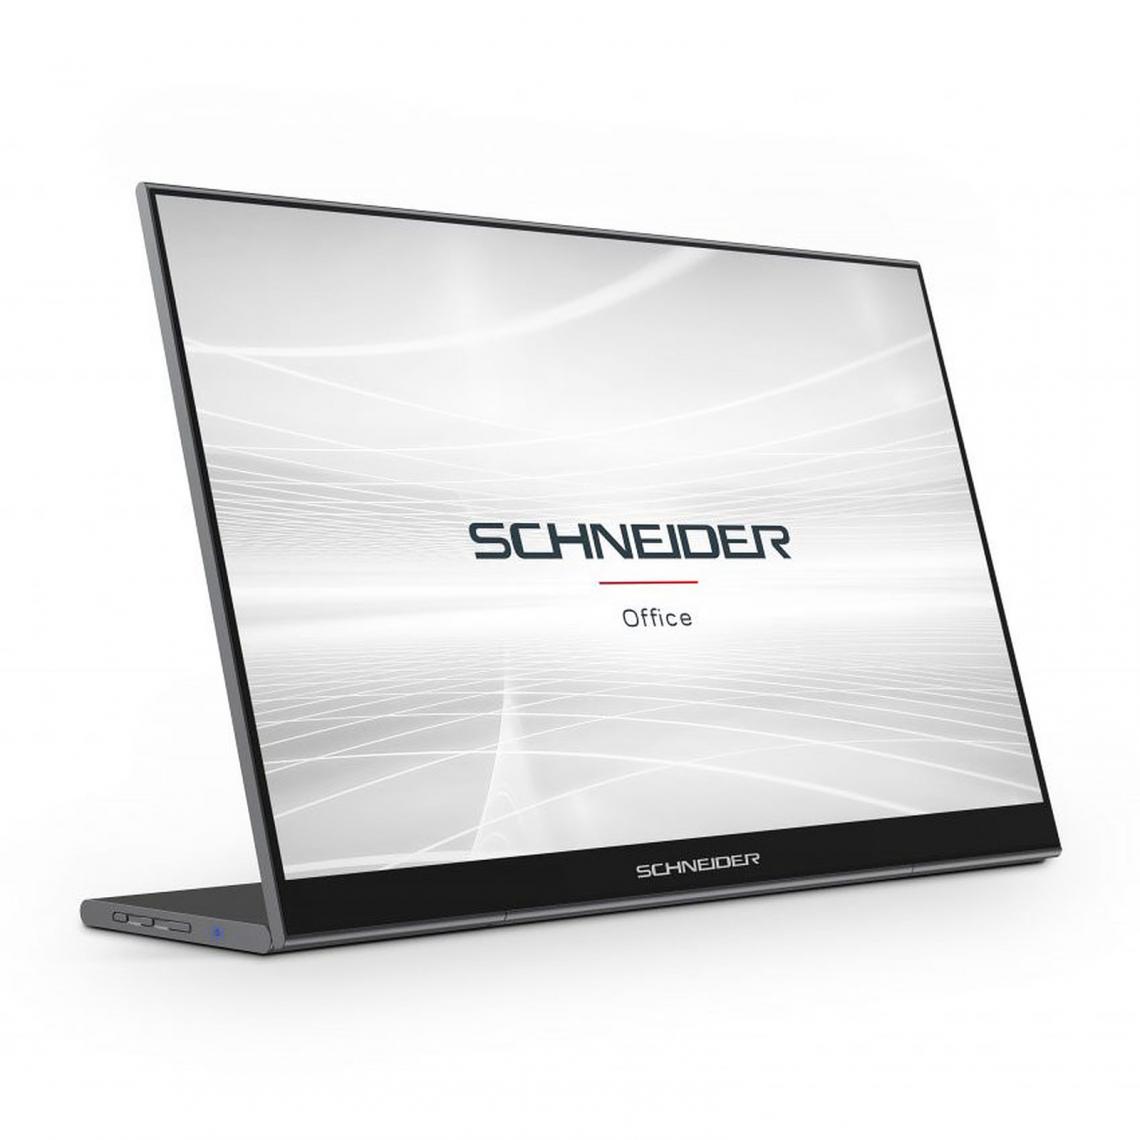 Schneider - SC16PM1FTOUCH - Moniteur portable -Ecran tactile - 15,6 pouces - Full HD - LED - HDMI 1.4 - Gris foncé - Moniteur PC